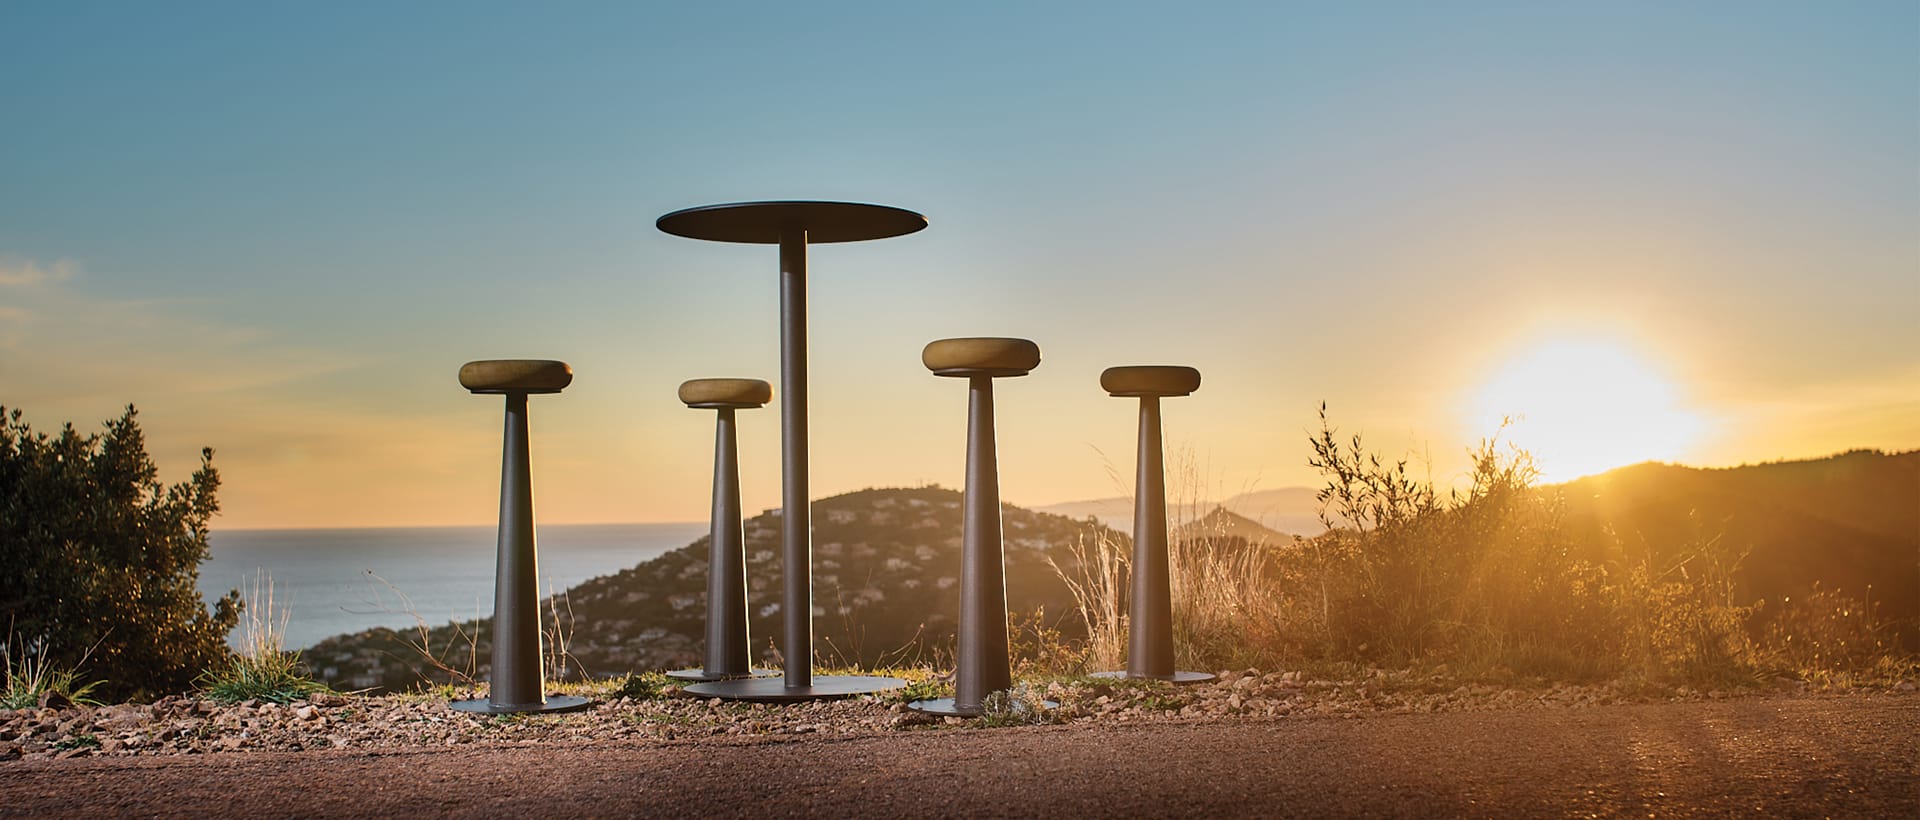 Table en acier thermolaqué de forme ronde fabriqué par CYRIA concepteur de mobilier urbain design pour les collectivités et espaces publics